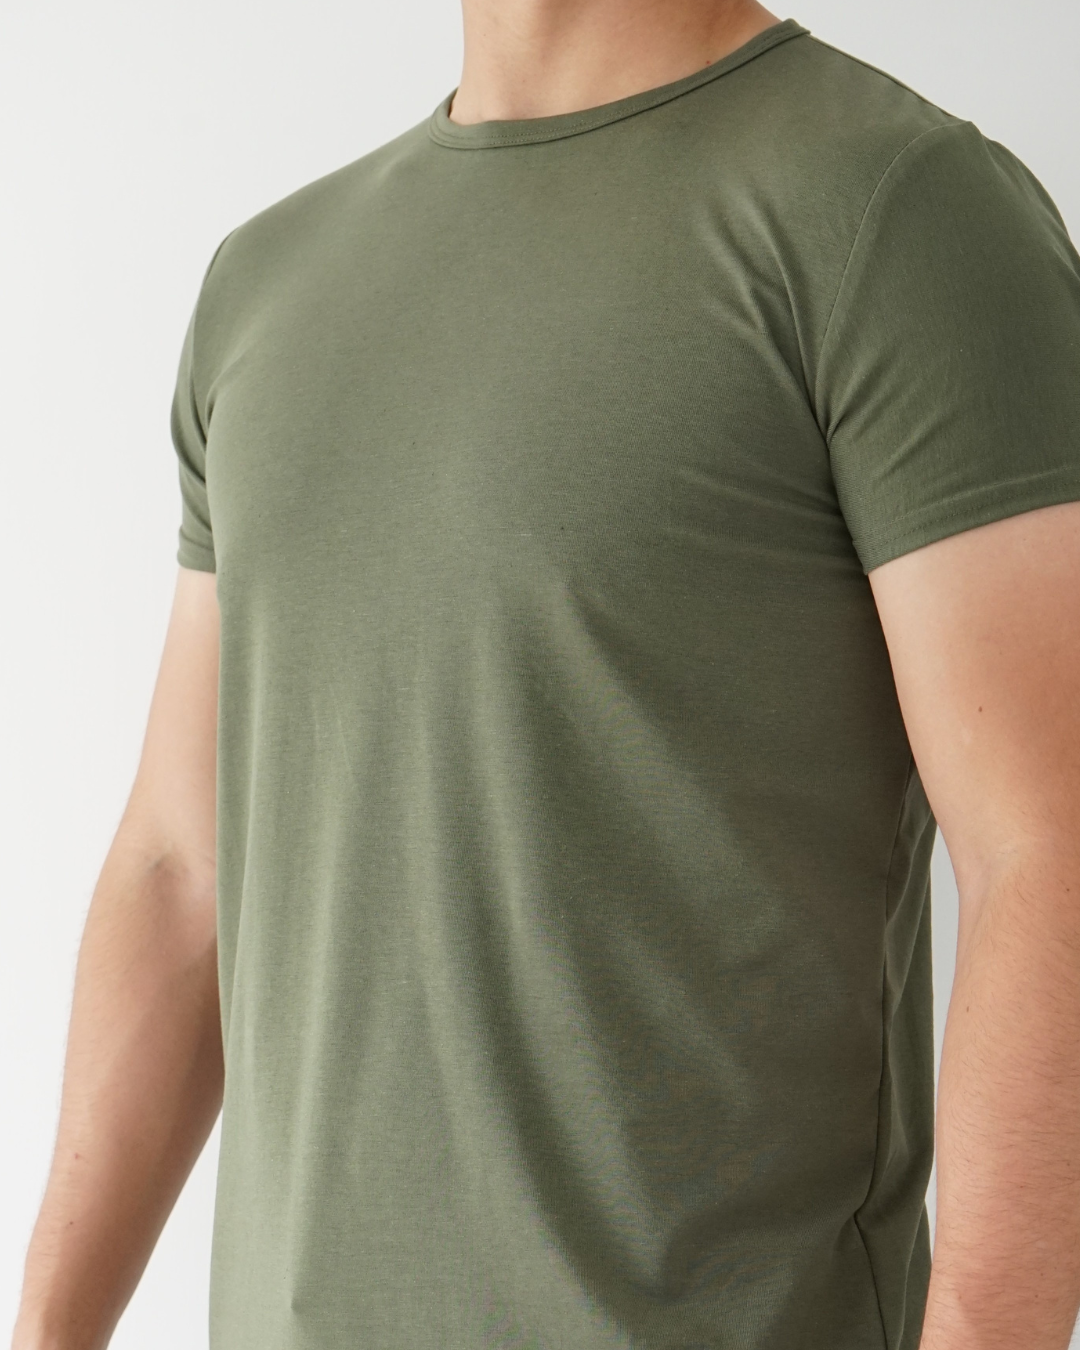 Musk Green T-shirt - Short Sleeve Crew Neck Original Bottom